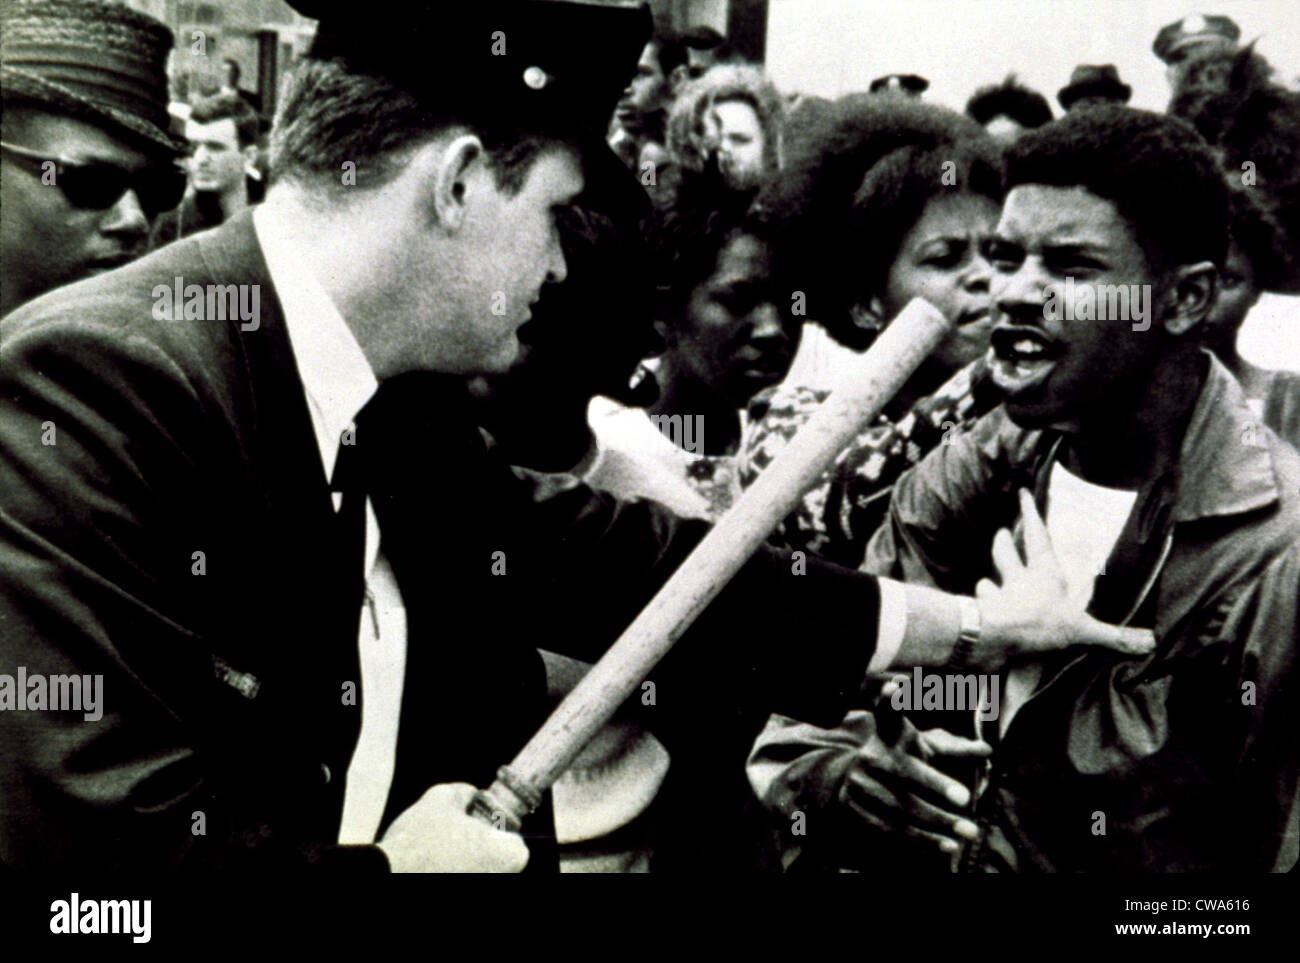 Manifestation confrontation avec la police en 1964. Avec la permission de la CSU : Archives / Everett Collection Banque D'Images